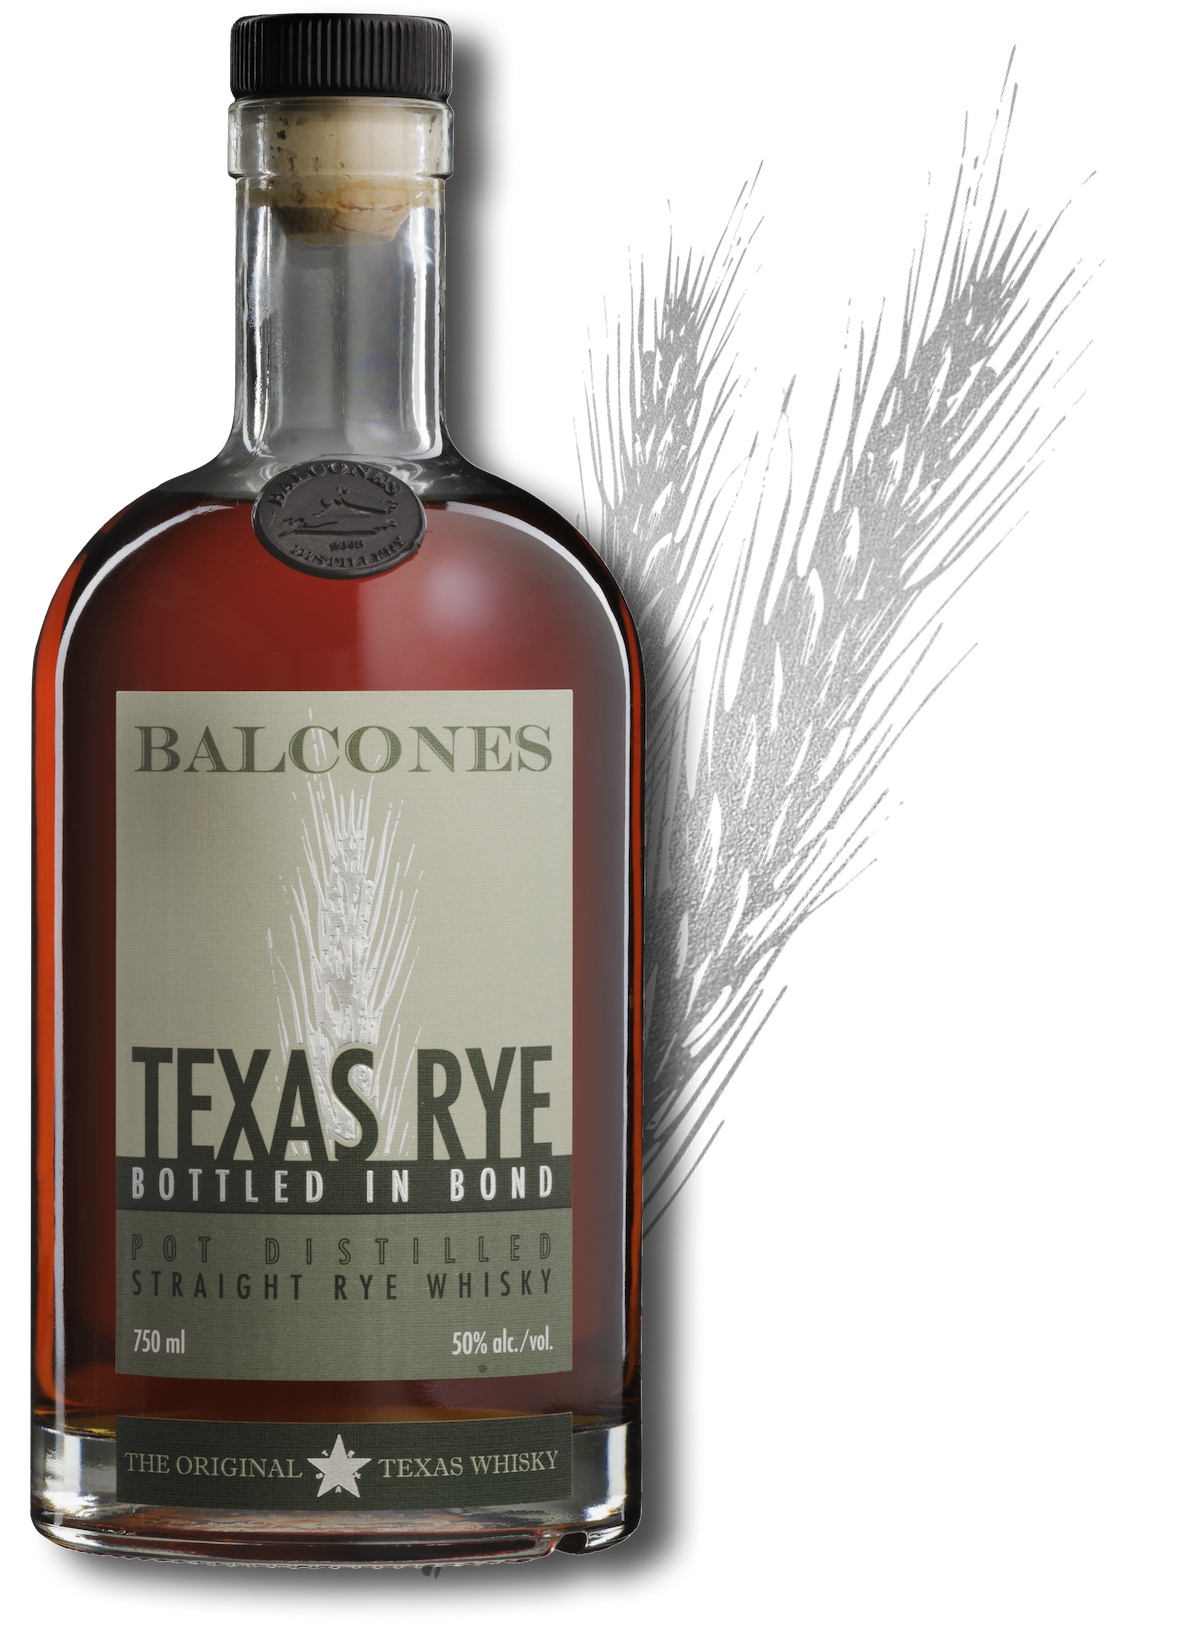 Balones Texas Rye Bottled in Bond